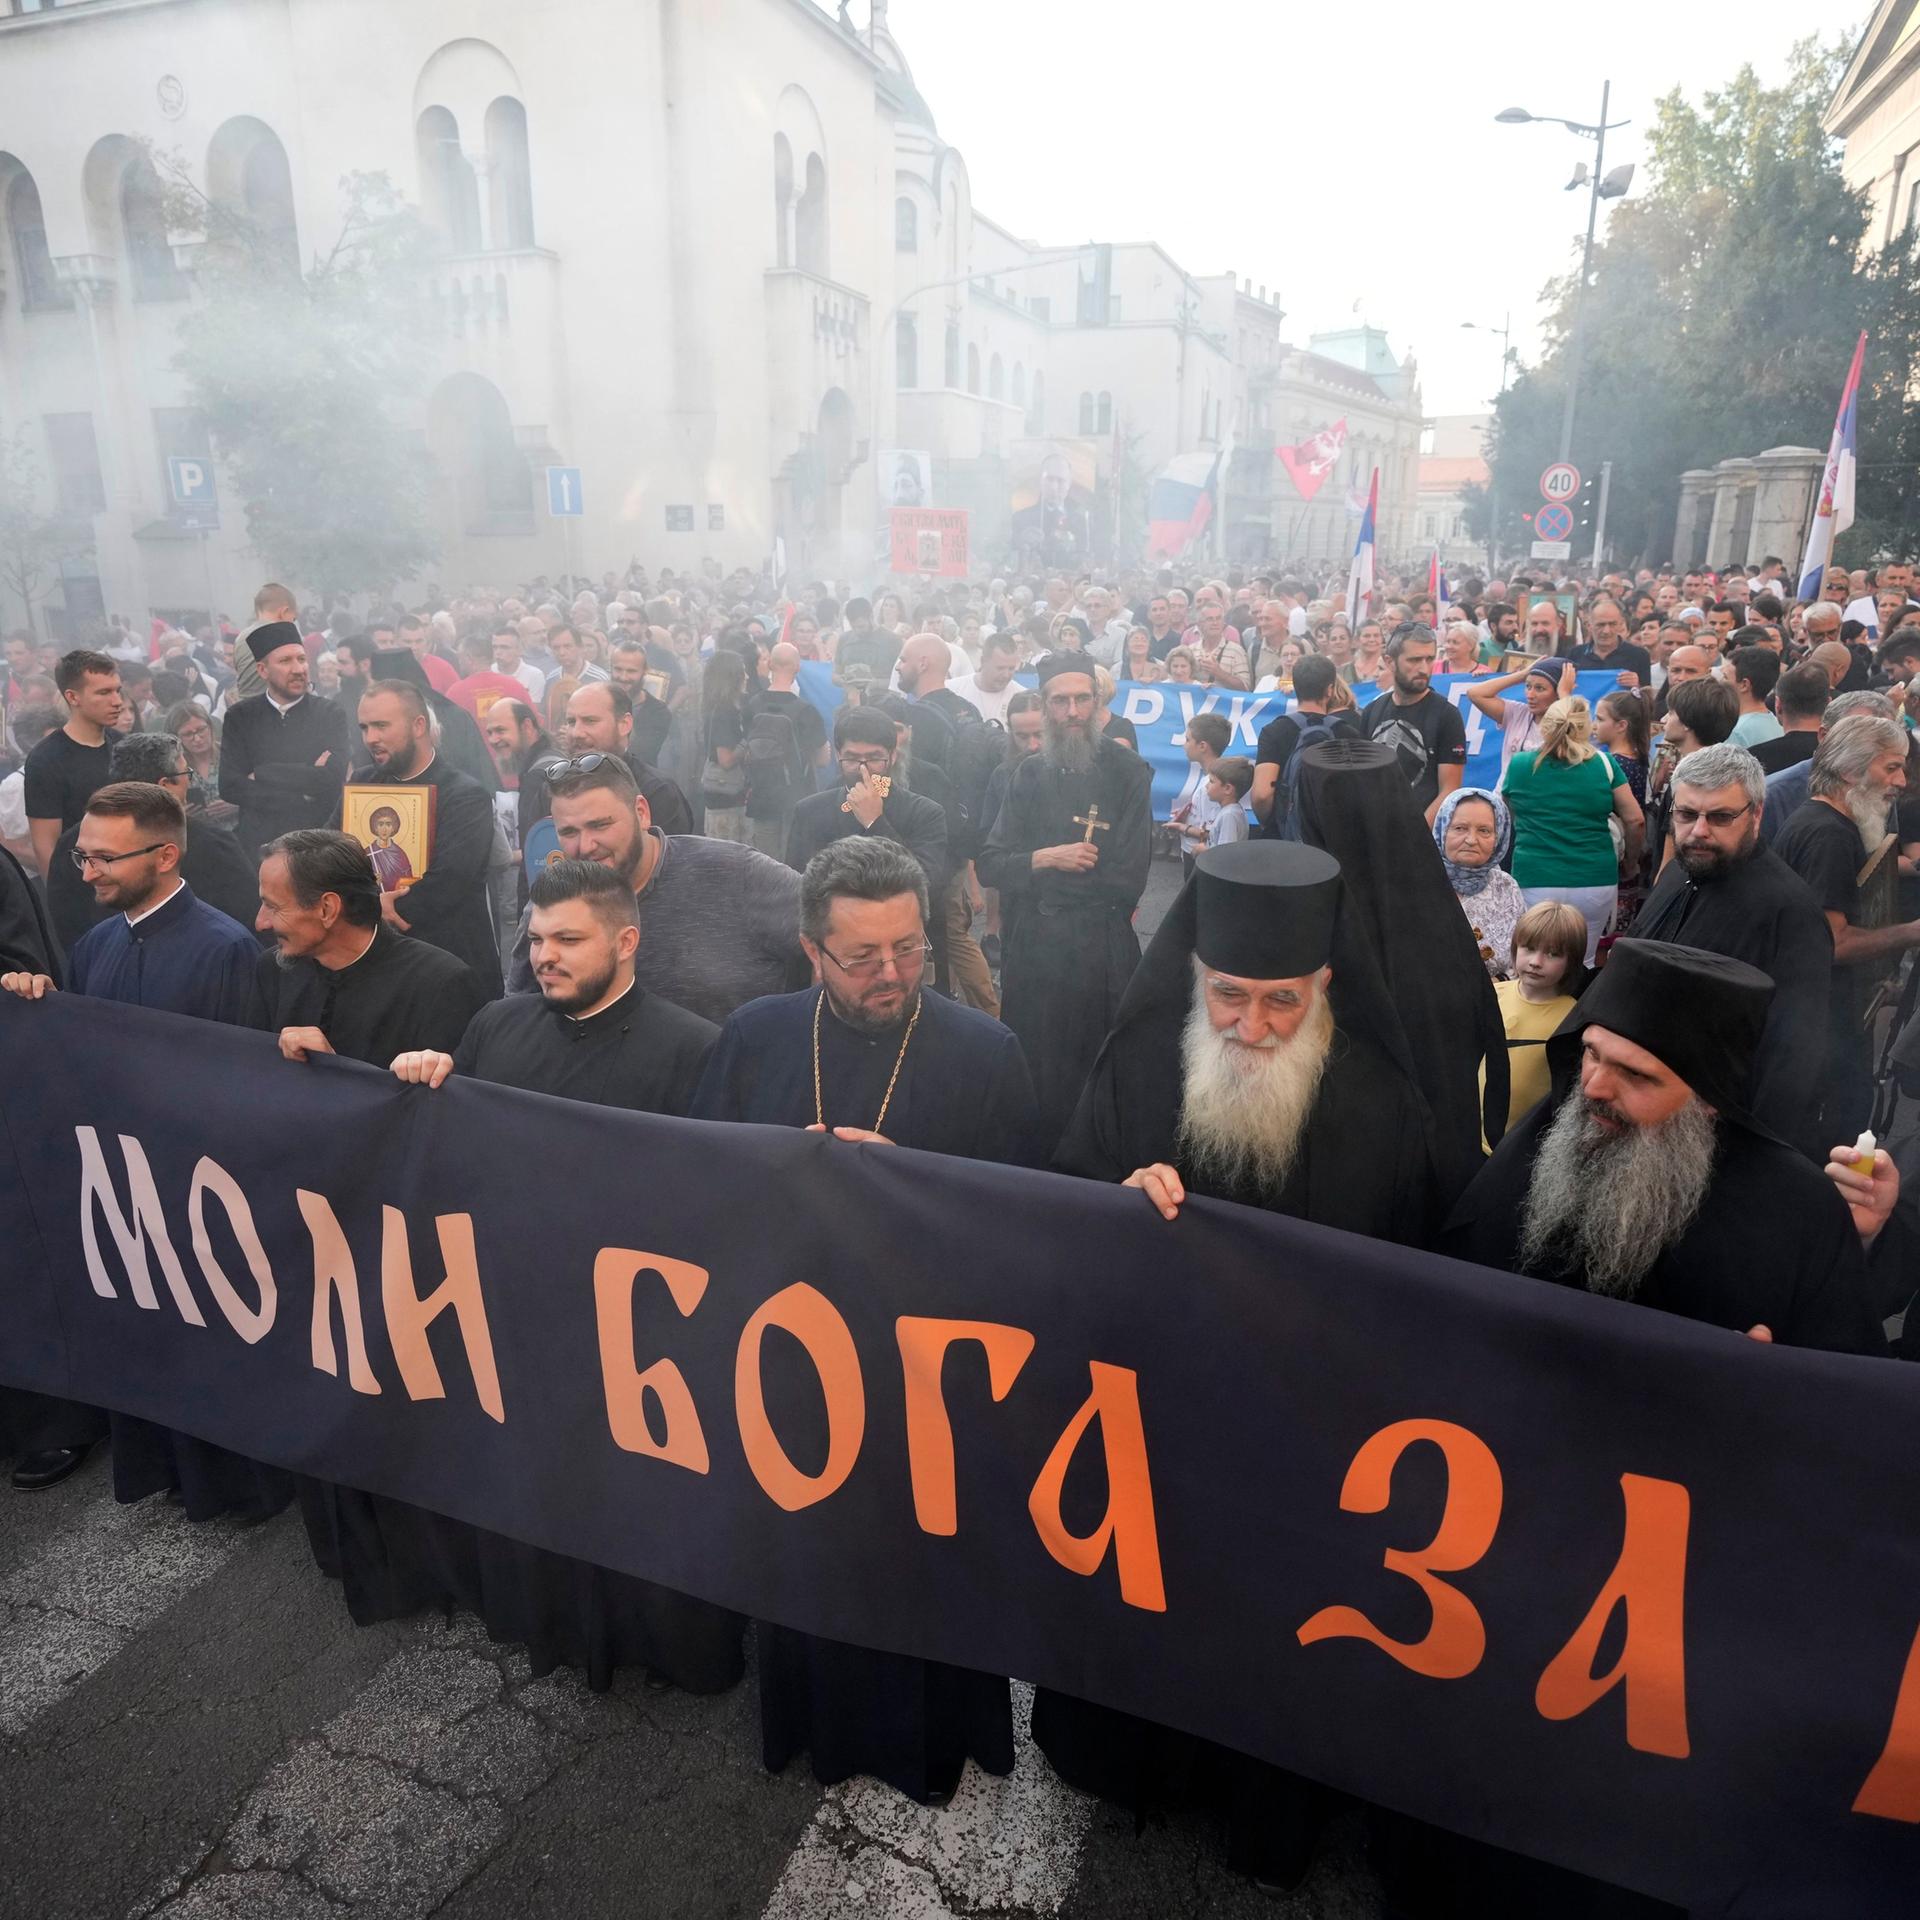 Belgrad: Menschen marschieren während eines Protests gegen die internationale LGBT-Veranstaltung Europride. 